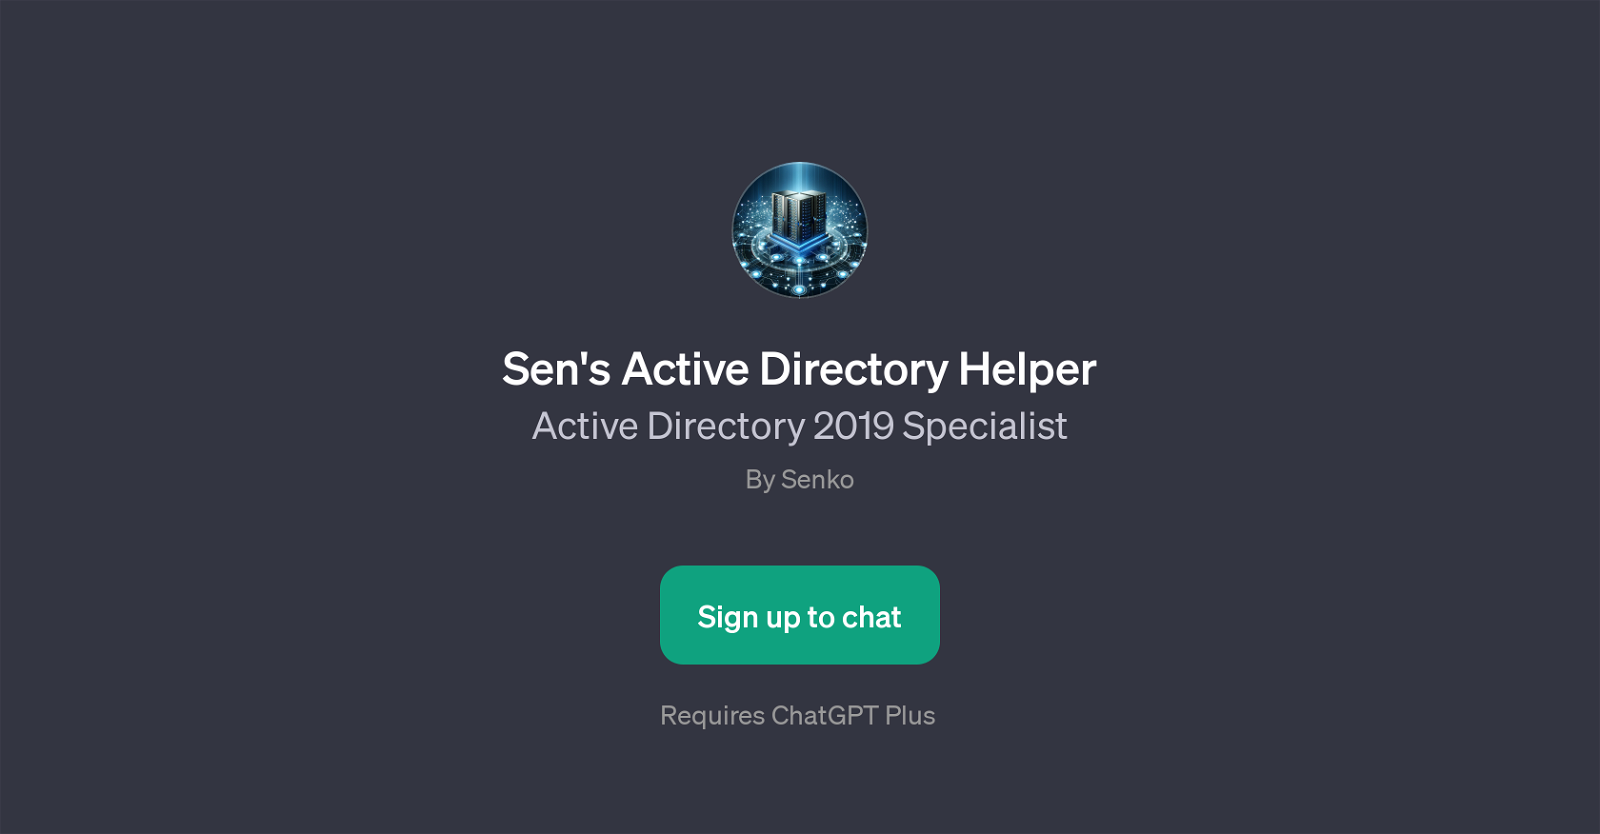 Sen's Active Directory Helper website